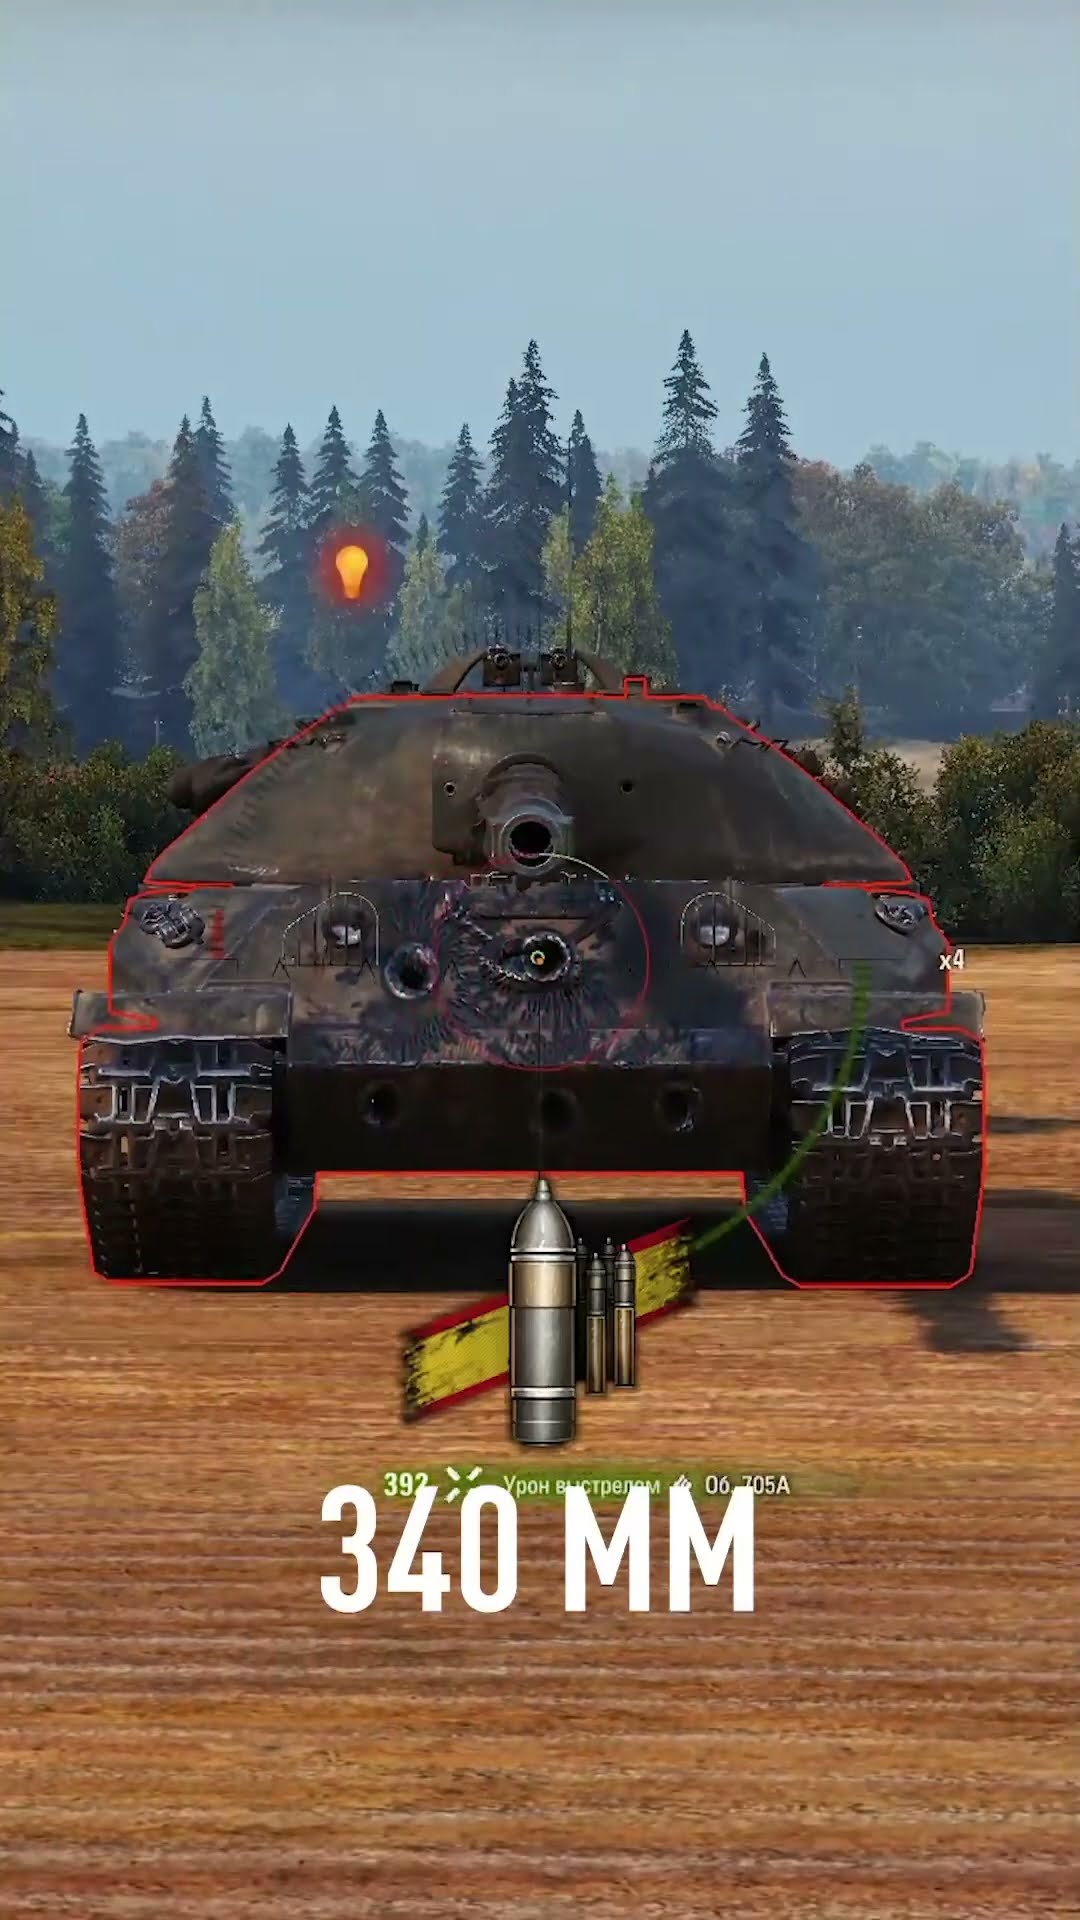 Превью: Как пробить тяжелый танк Объект 705А в Мир Танков? #wot #миртанков